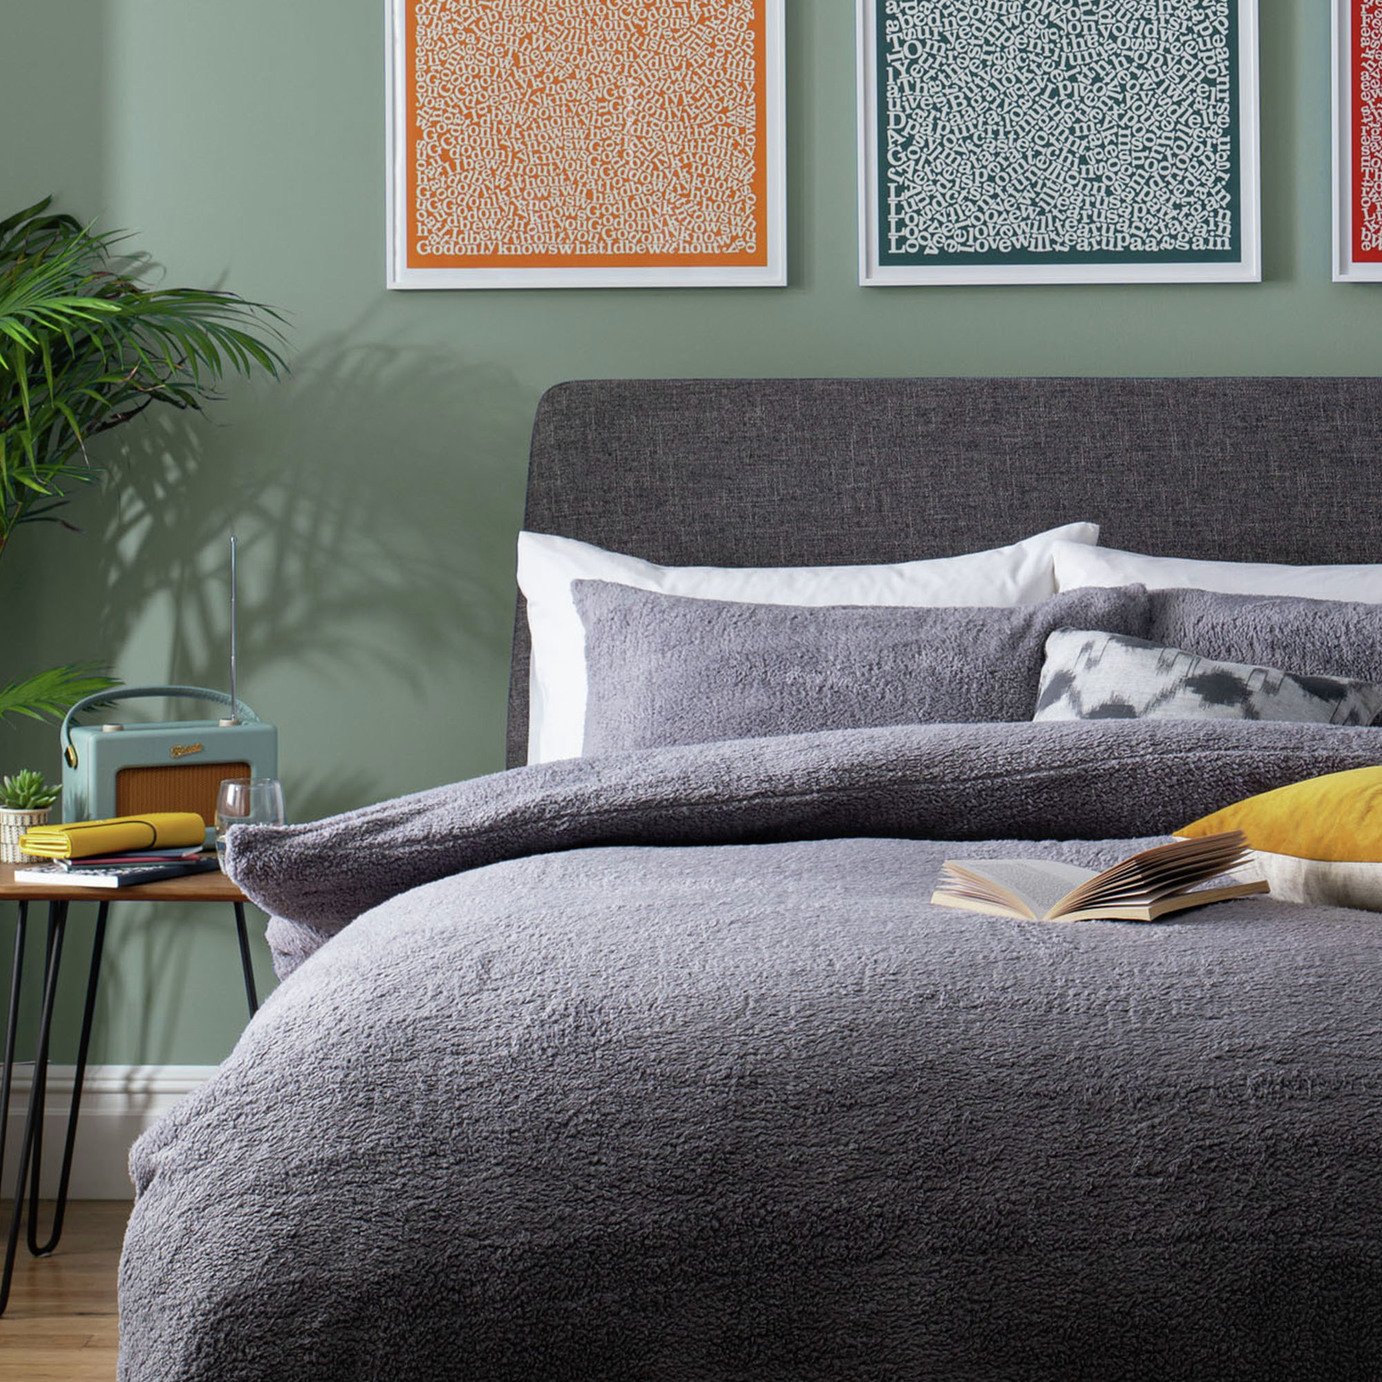 Argos Home Fleece Plain Grey Bedding Set - Double